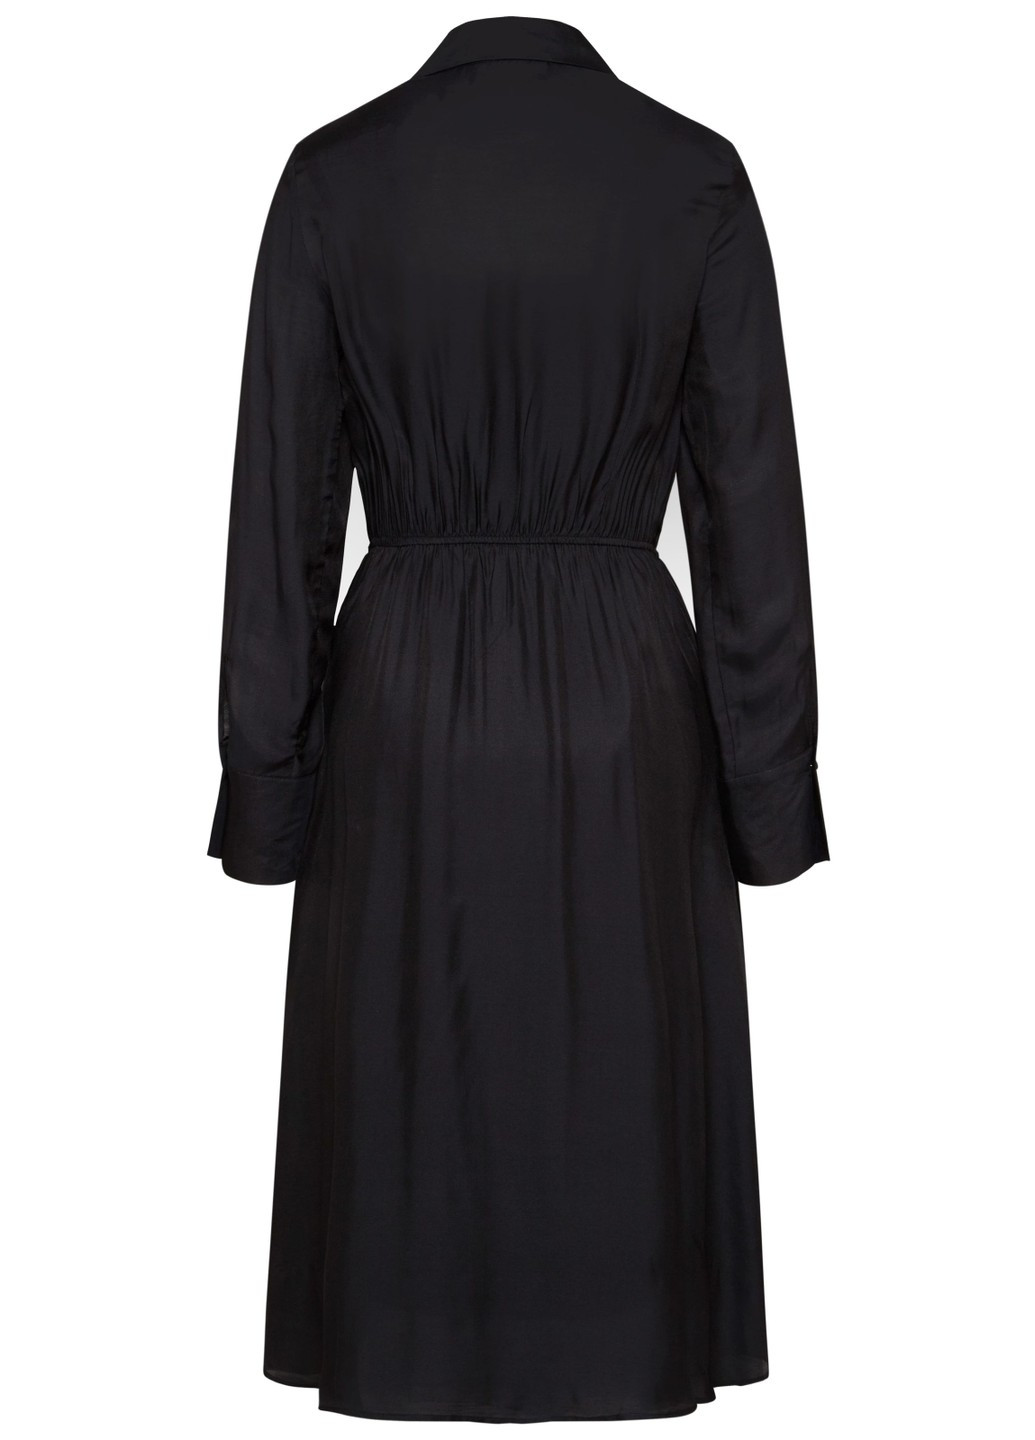 Черное повседневный женское платье 1194 90085/290 черный Bugatti